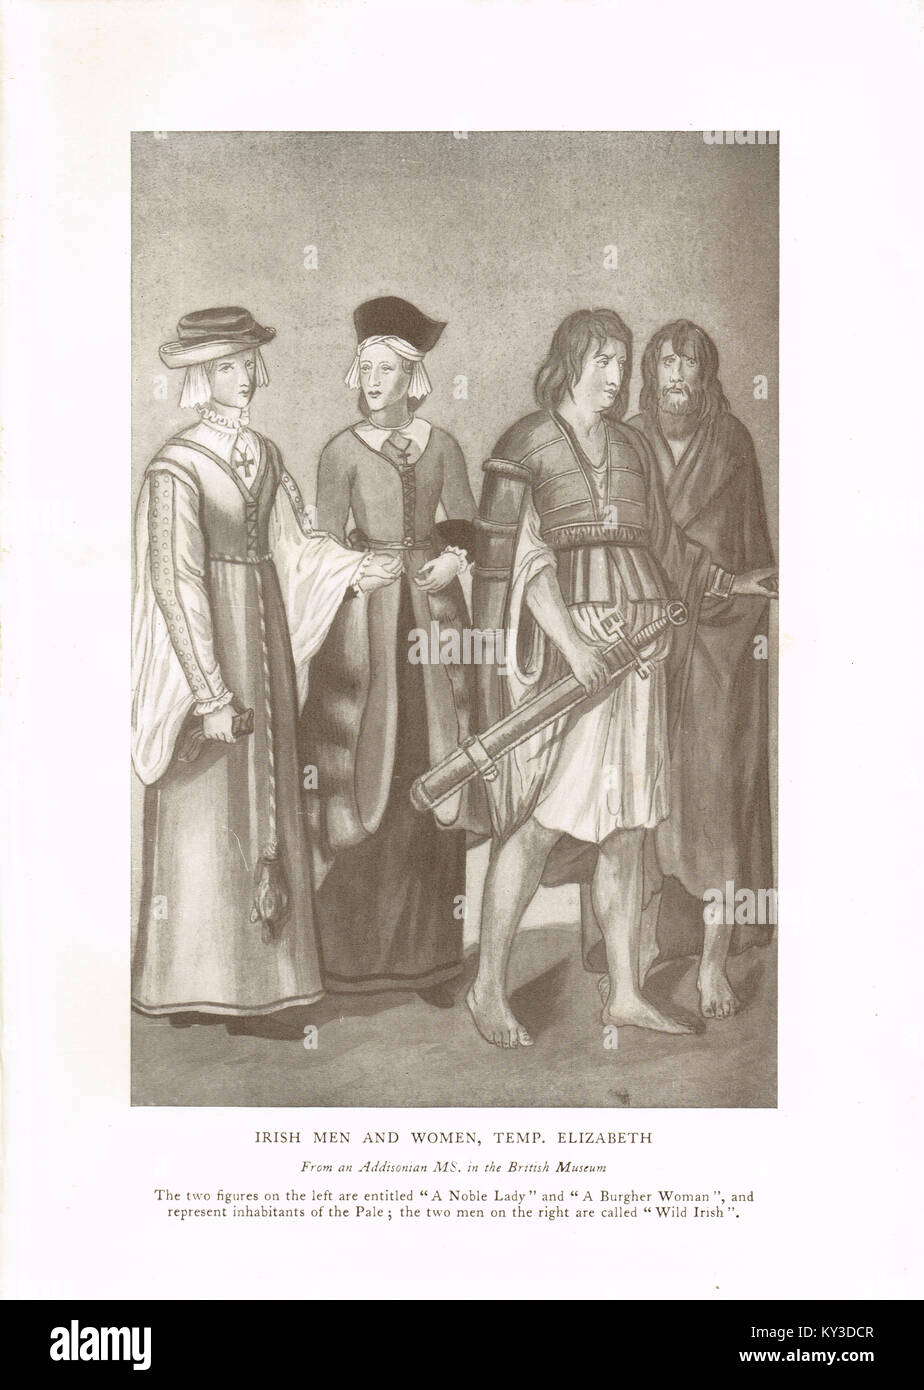 Un nobile signora, una donna burgher e Wild Irlandesi, uomini al di là del pallido al tempo di Elisabetta I Foto Stock